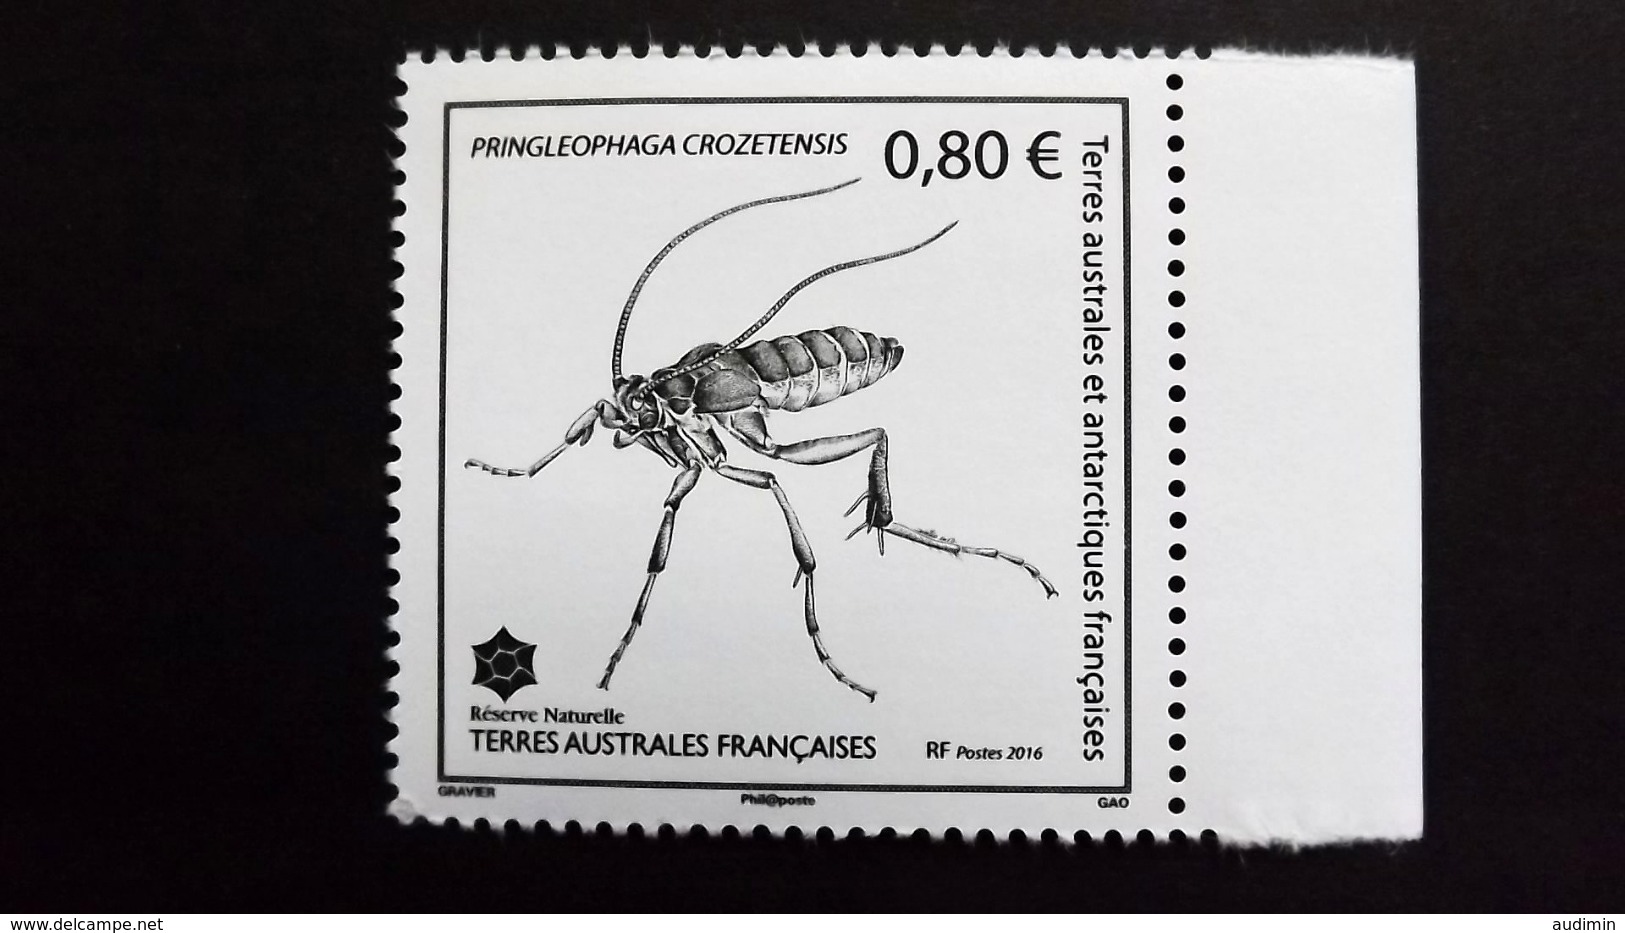 Französische Süd- Und Antarktisgebiete TAAF 914 **/mnh, Pringleophaga Crozetensis (endemische Schmetterlingsart) Crozet - Unused Stamps